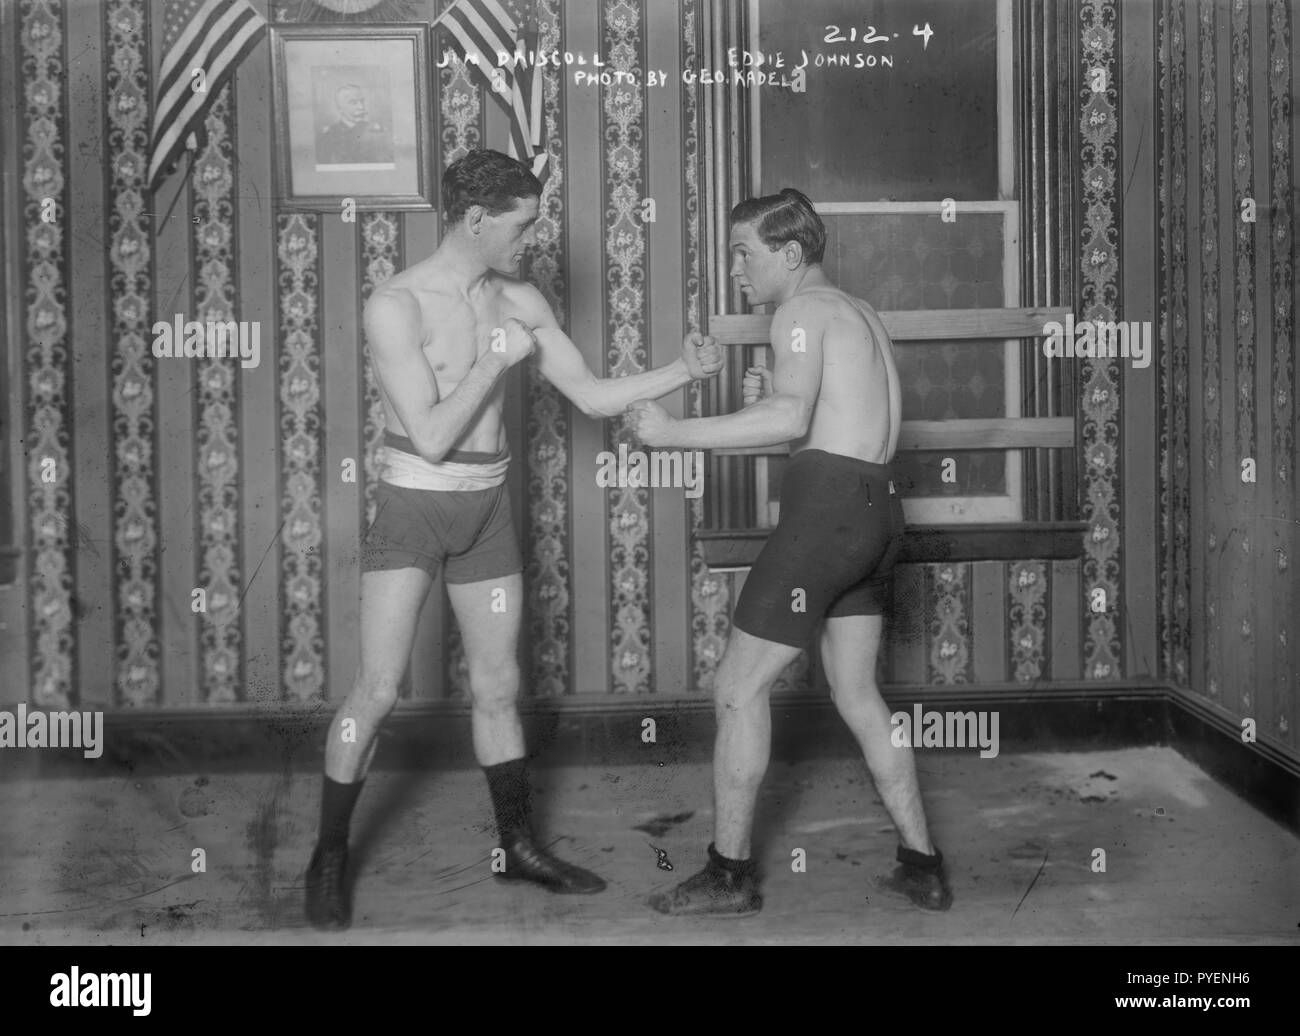 Boxer ineguagliabile Jim 'Jem' Driscoll (1880-1925) nato a Cardiff, Regno Unito, sparring con Eddie Johnson in 1908/1909 quando si esegue il boxing negli Stati Uniti in tour. Foto Stock